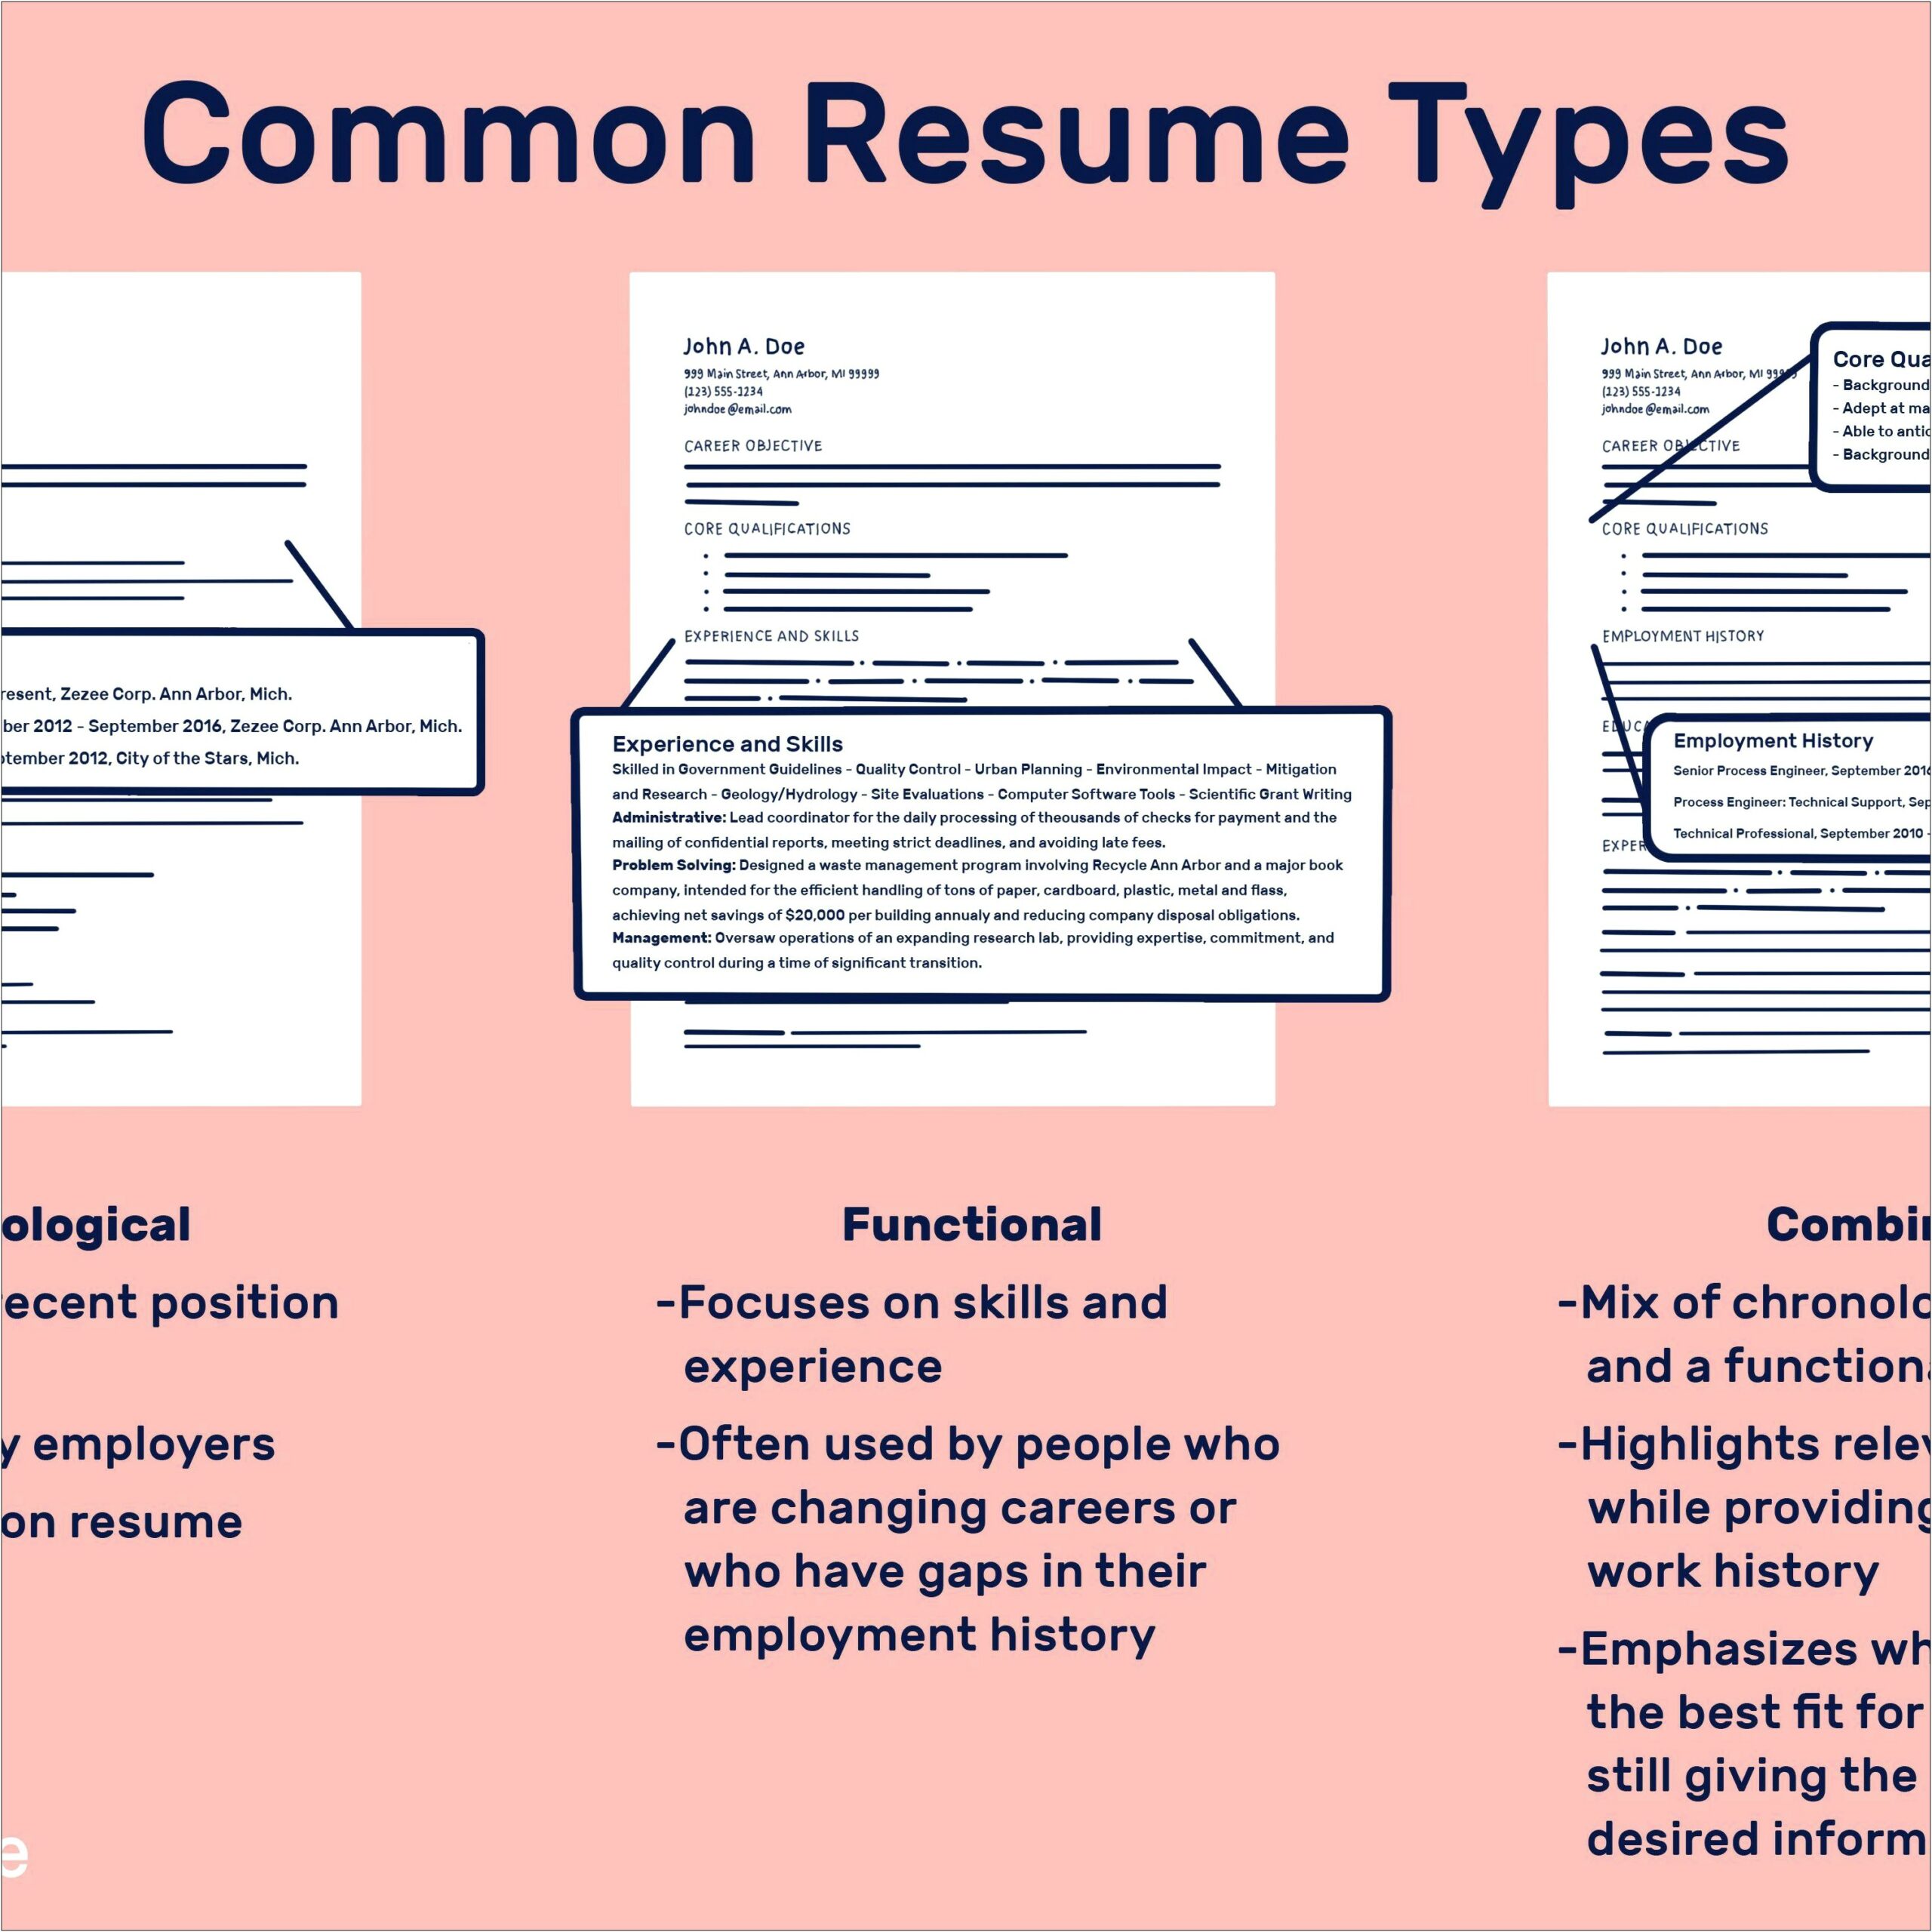 Best Resume Type For Career Change